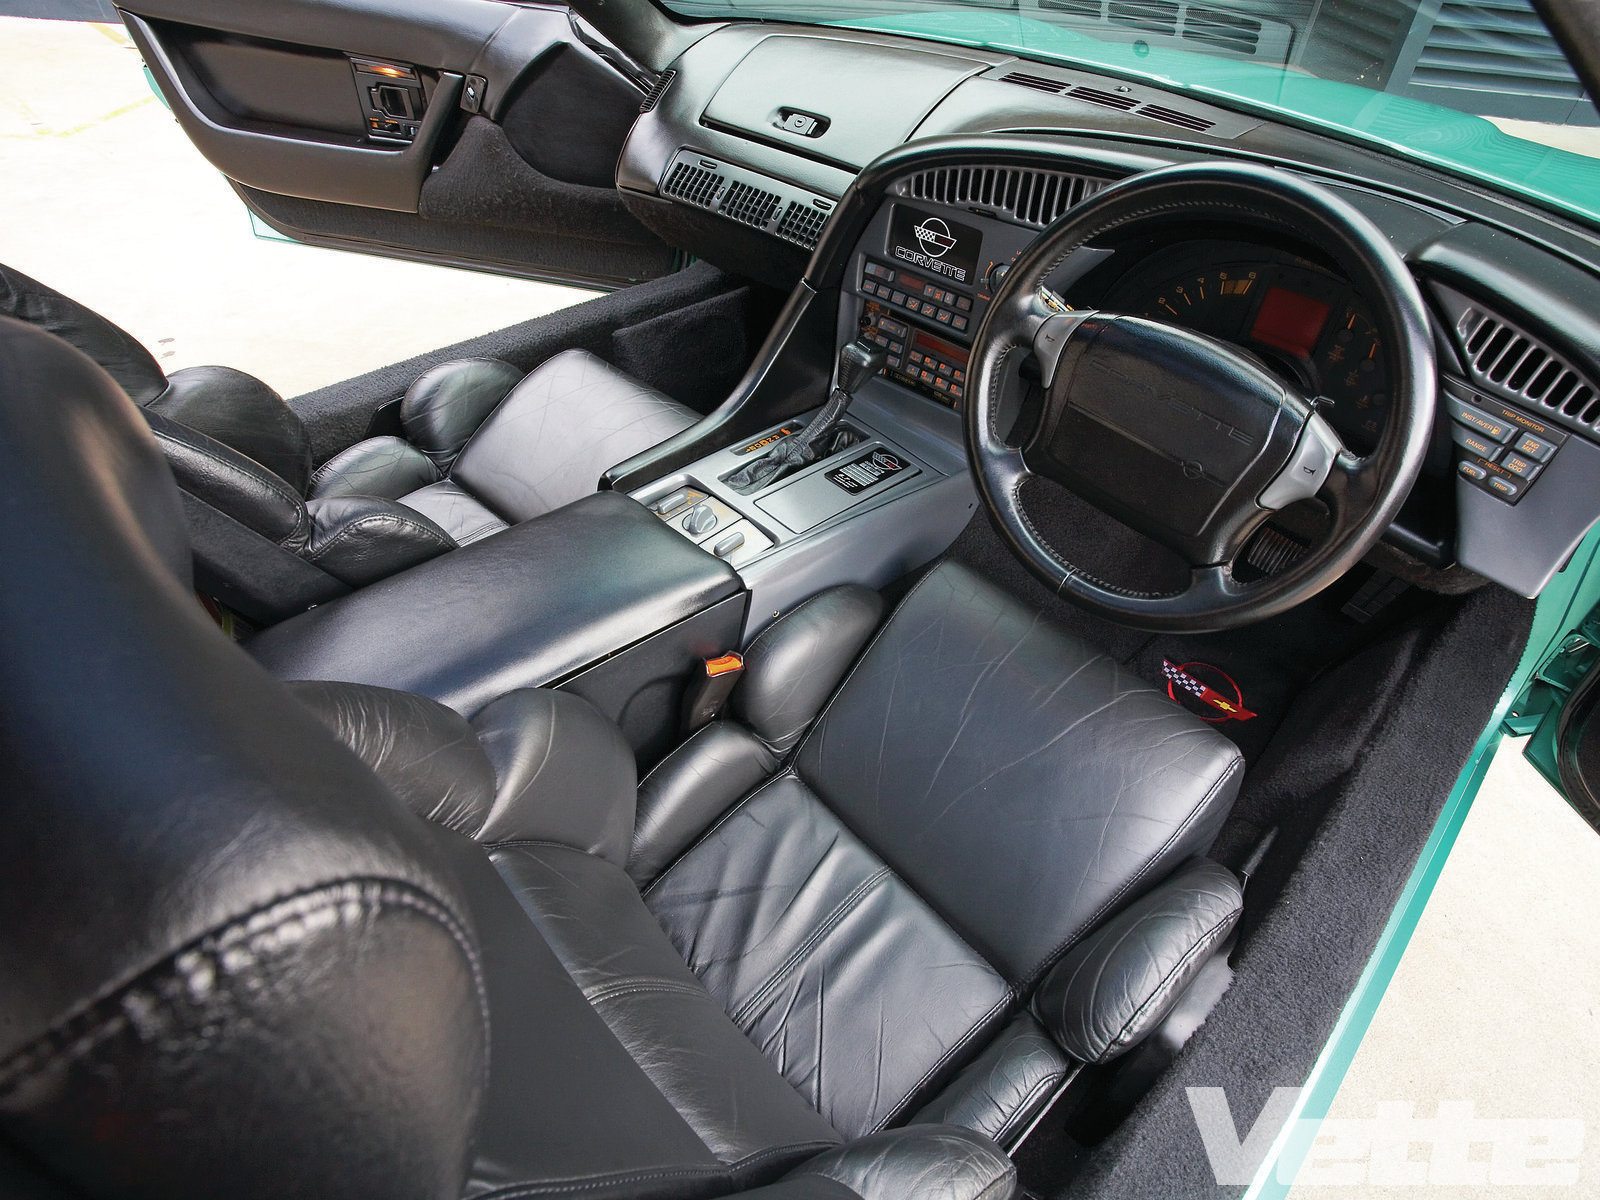 1991 Corvette